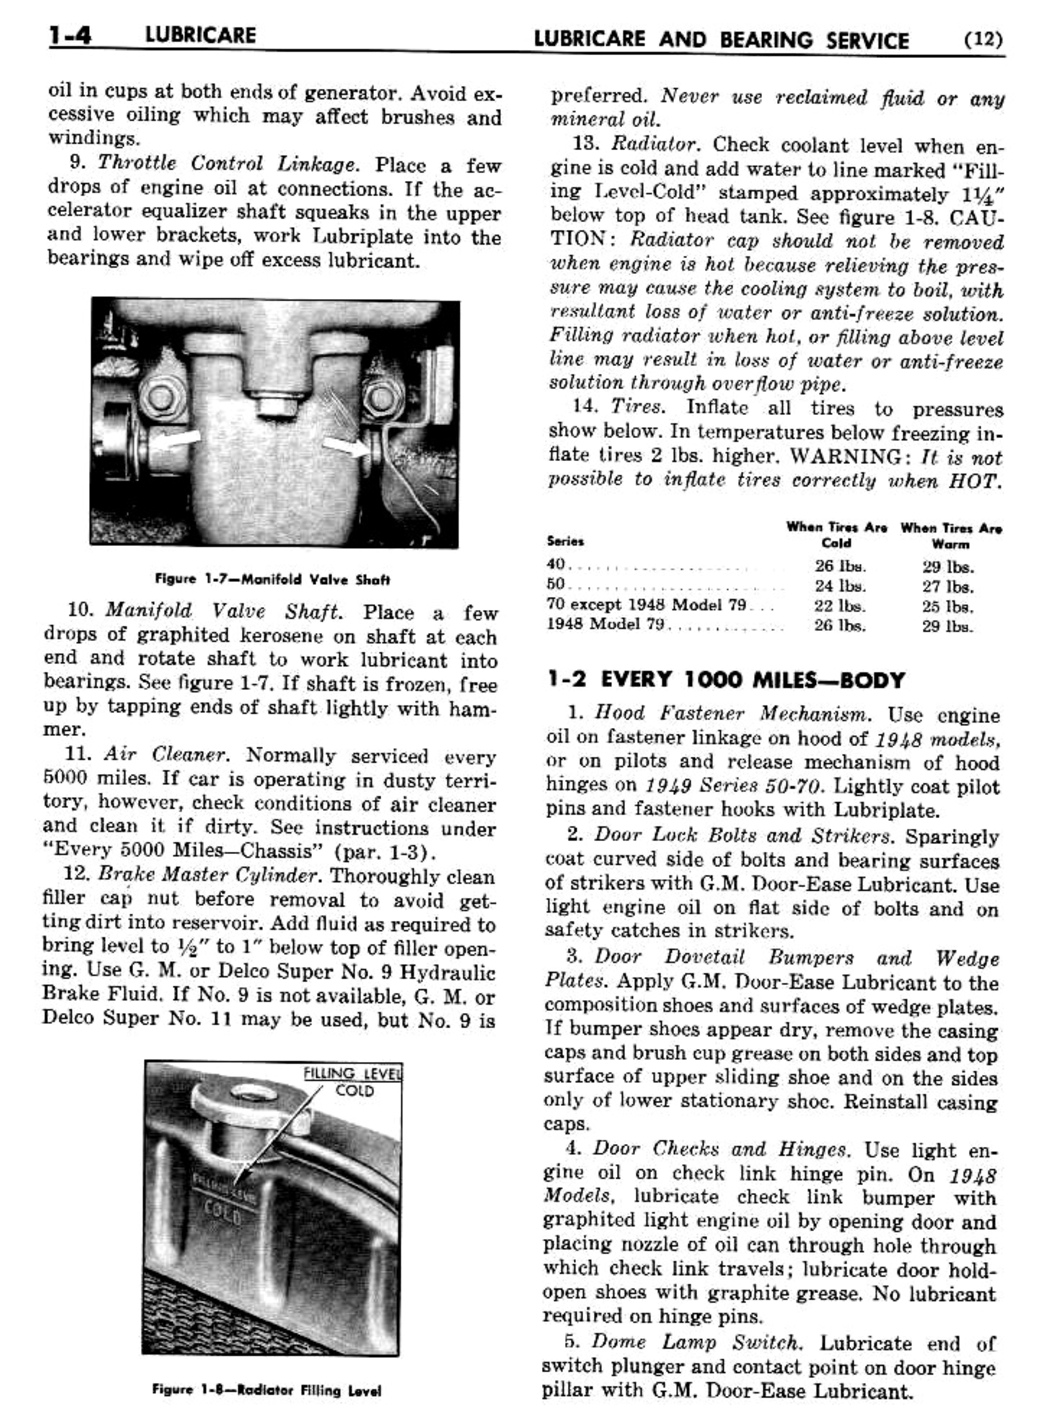 n_02 1948 Buick Shop Manual - Lubricare-004-004.jpg